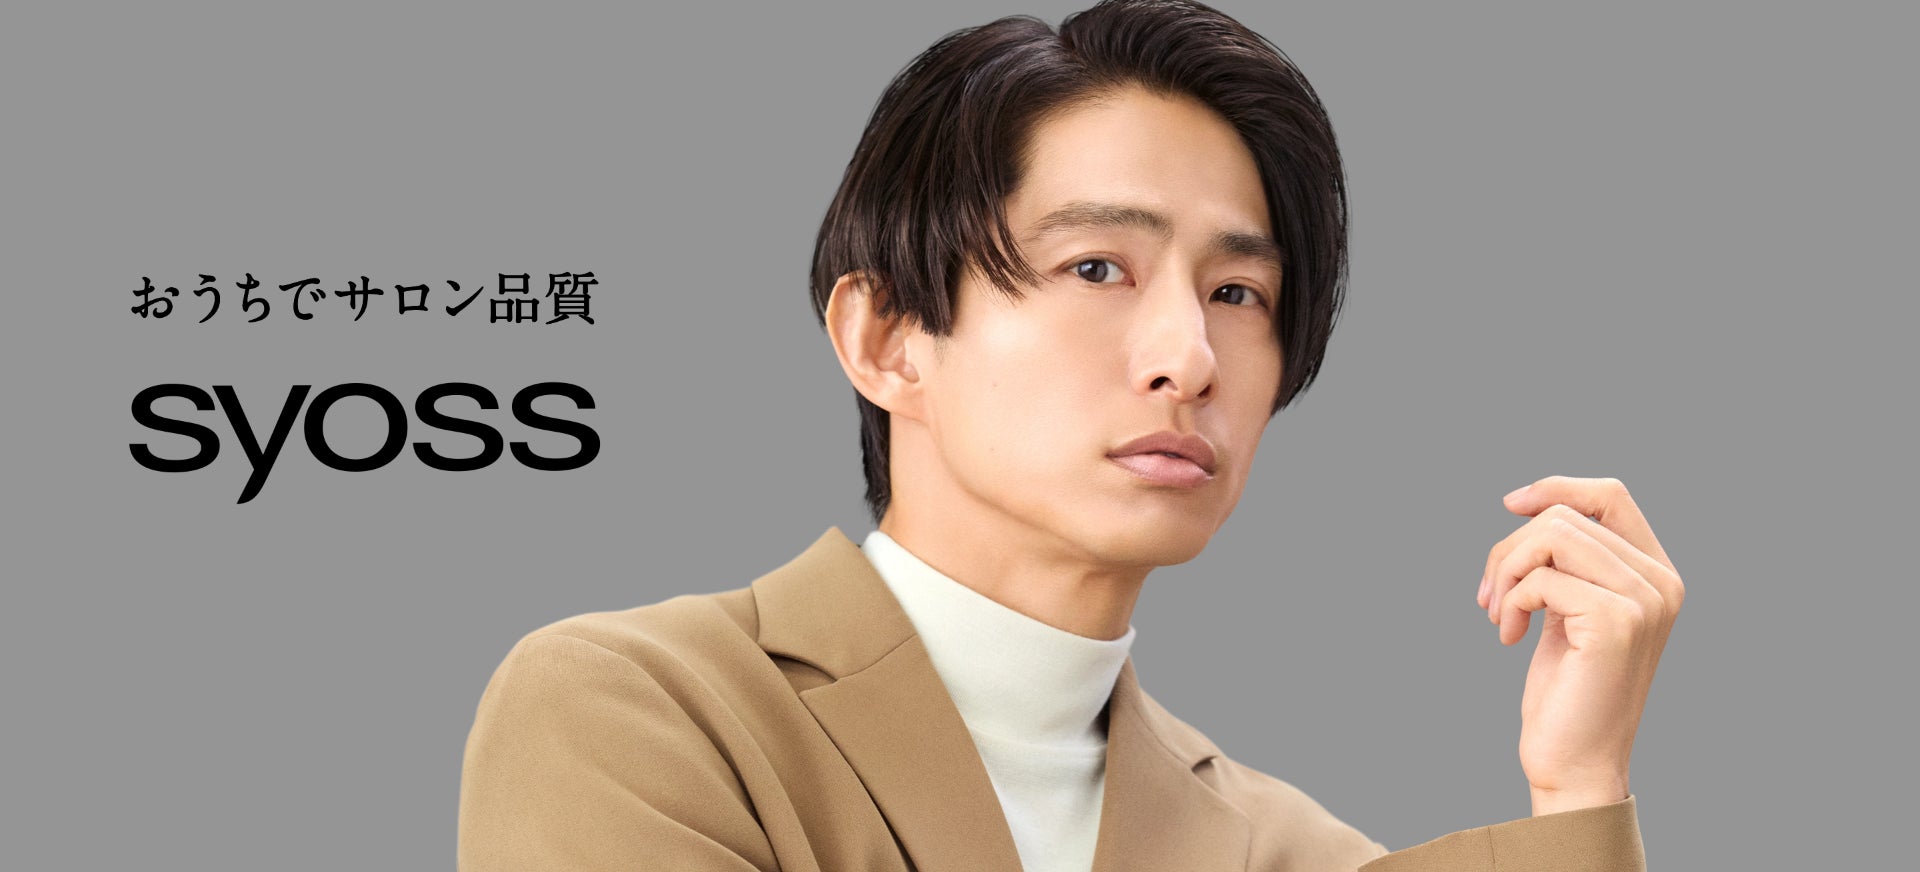 中島健人さん出演 スキンケアブランド『パーフェクトワンフォーカス』の新CM「サックス」篇を3月15日(金)より全国で放映開始